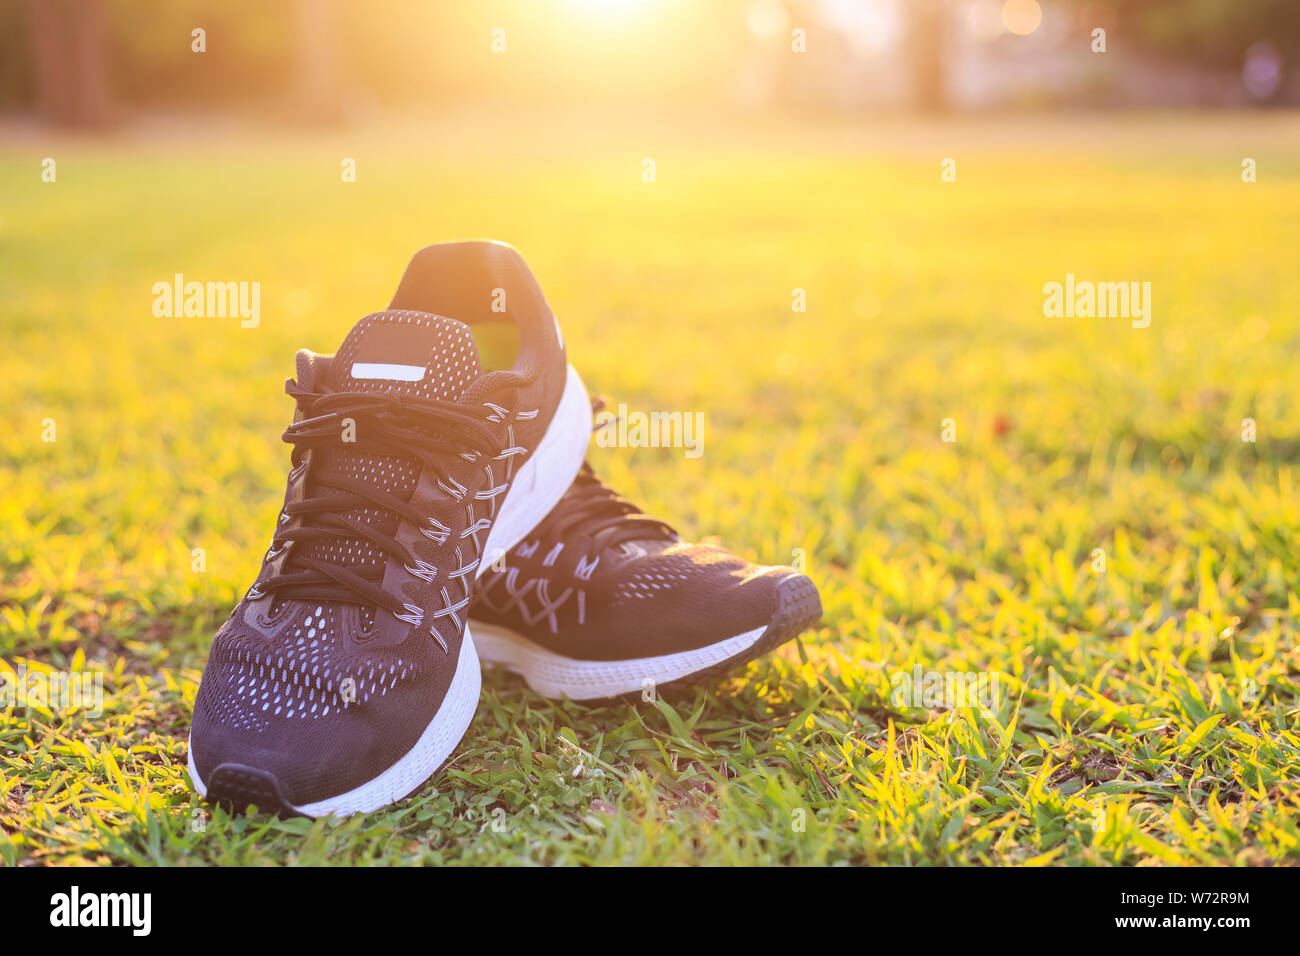 Close up neue Paare schwarz Schuhe/Sneaker Schuhe auf der grünen Wiese im Park bei Sonnenuntergang. Worm Ton, Sonnenlicht und lens flare Effekt w Stockfoto